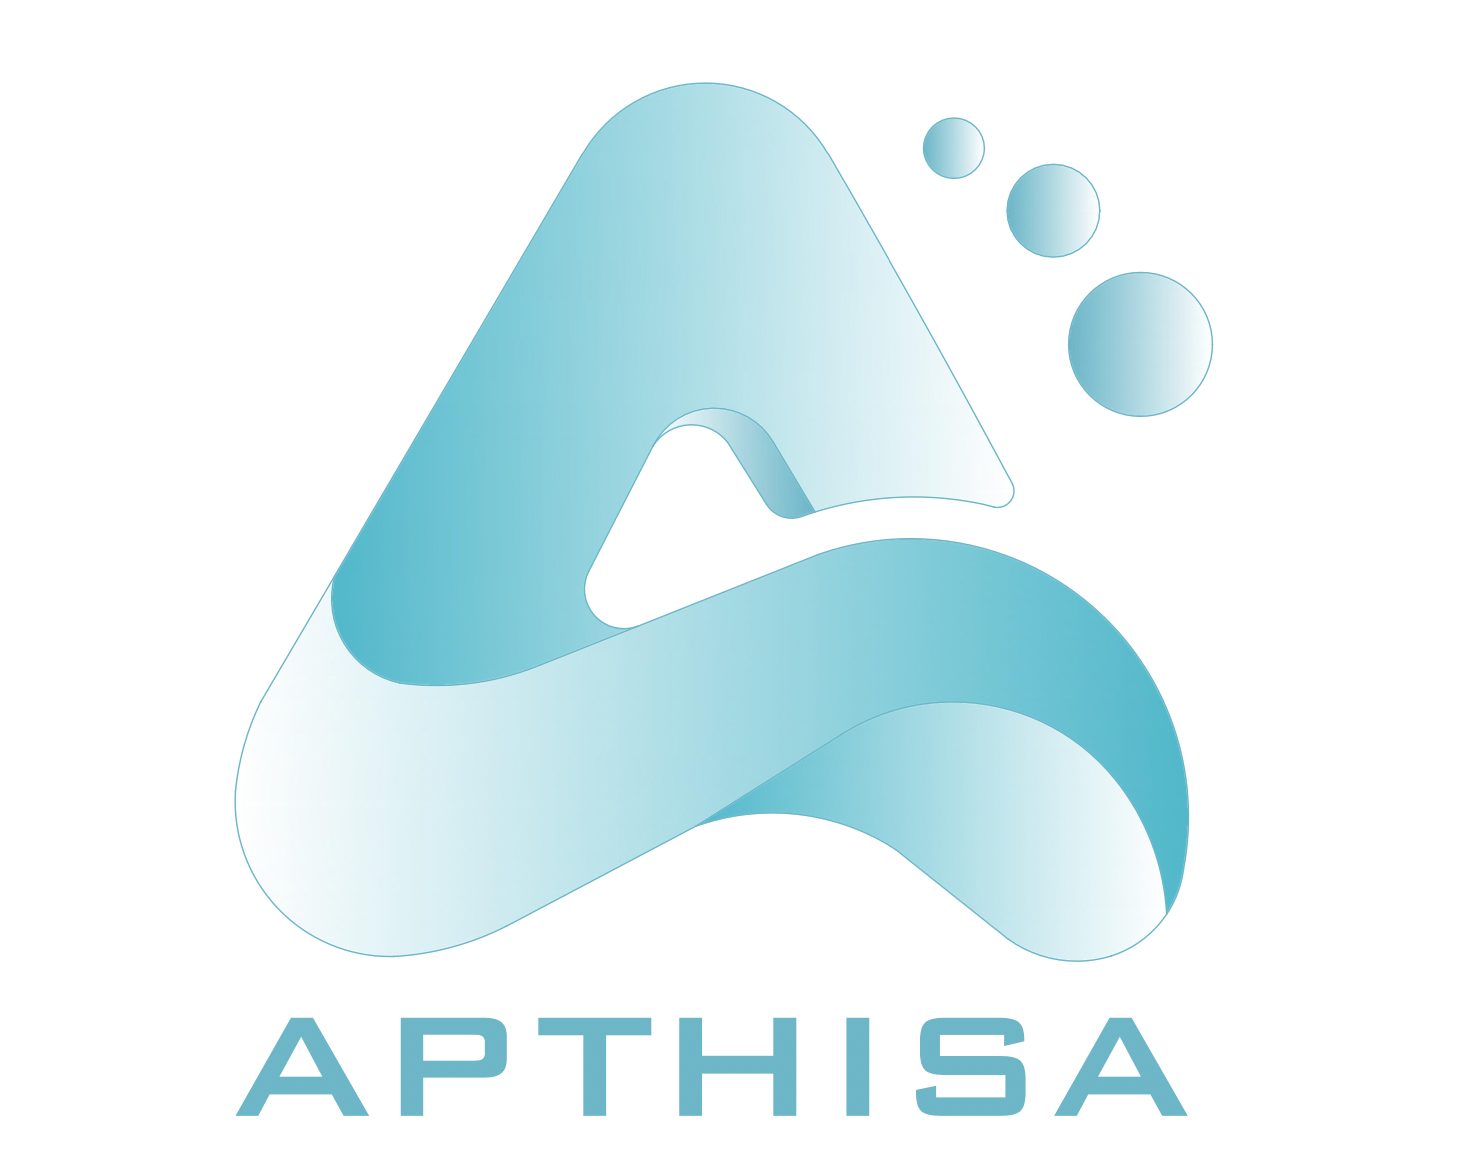 APTHISA